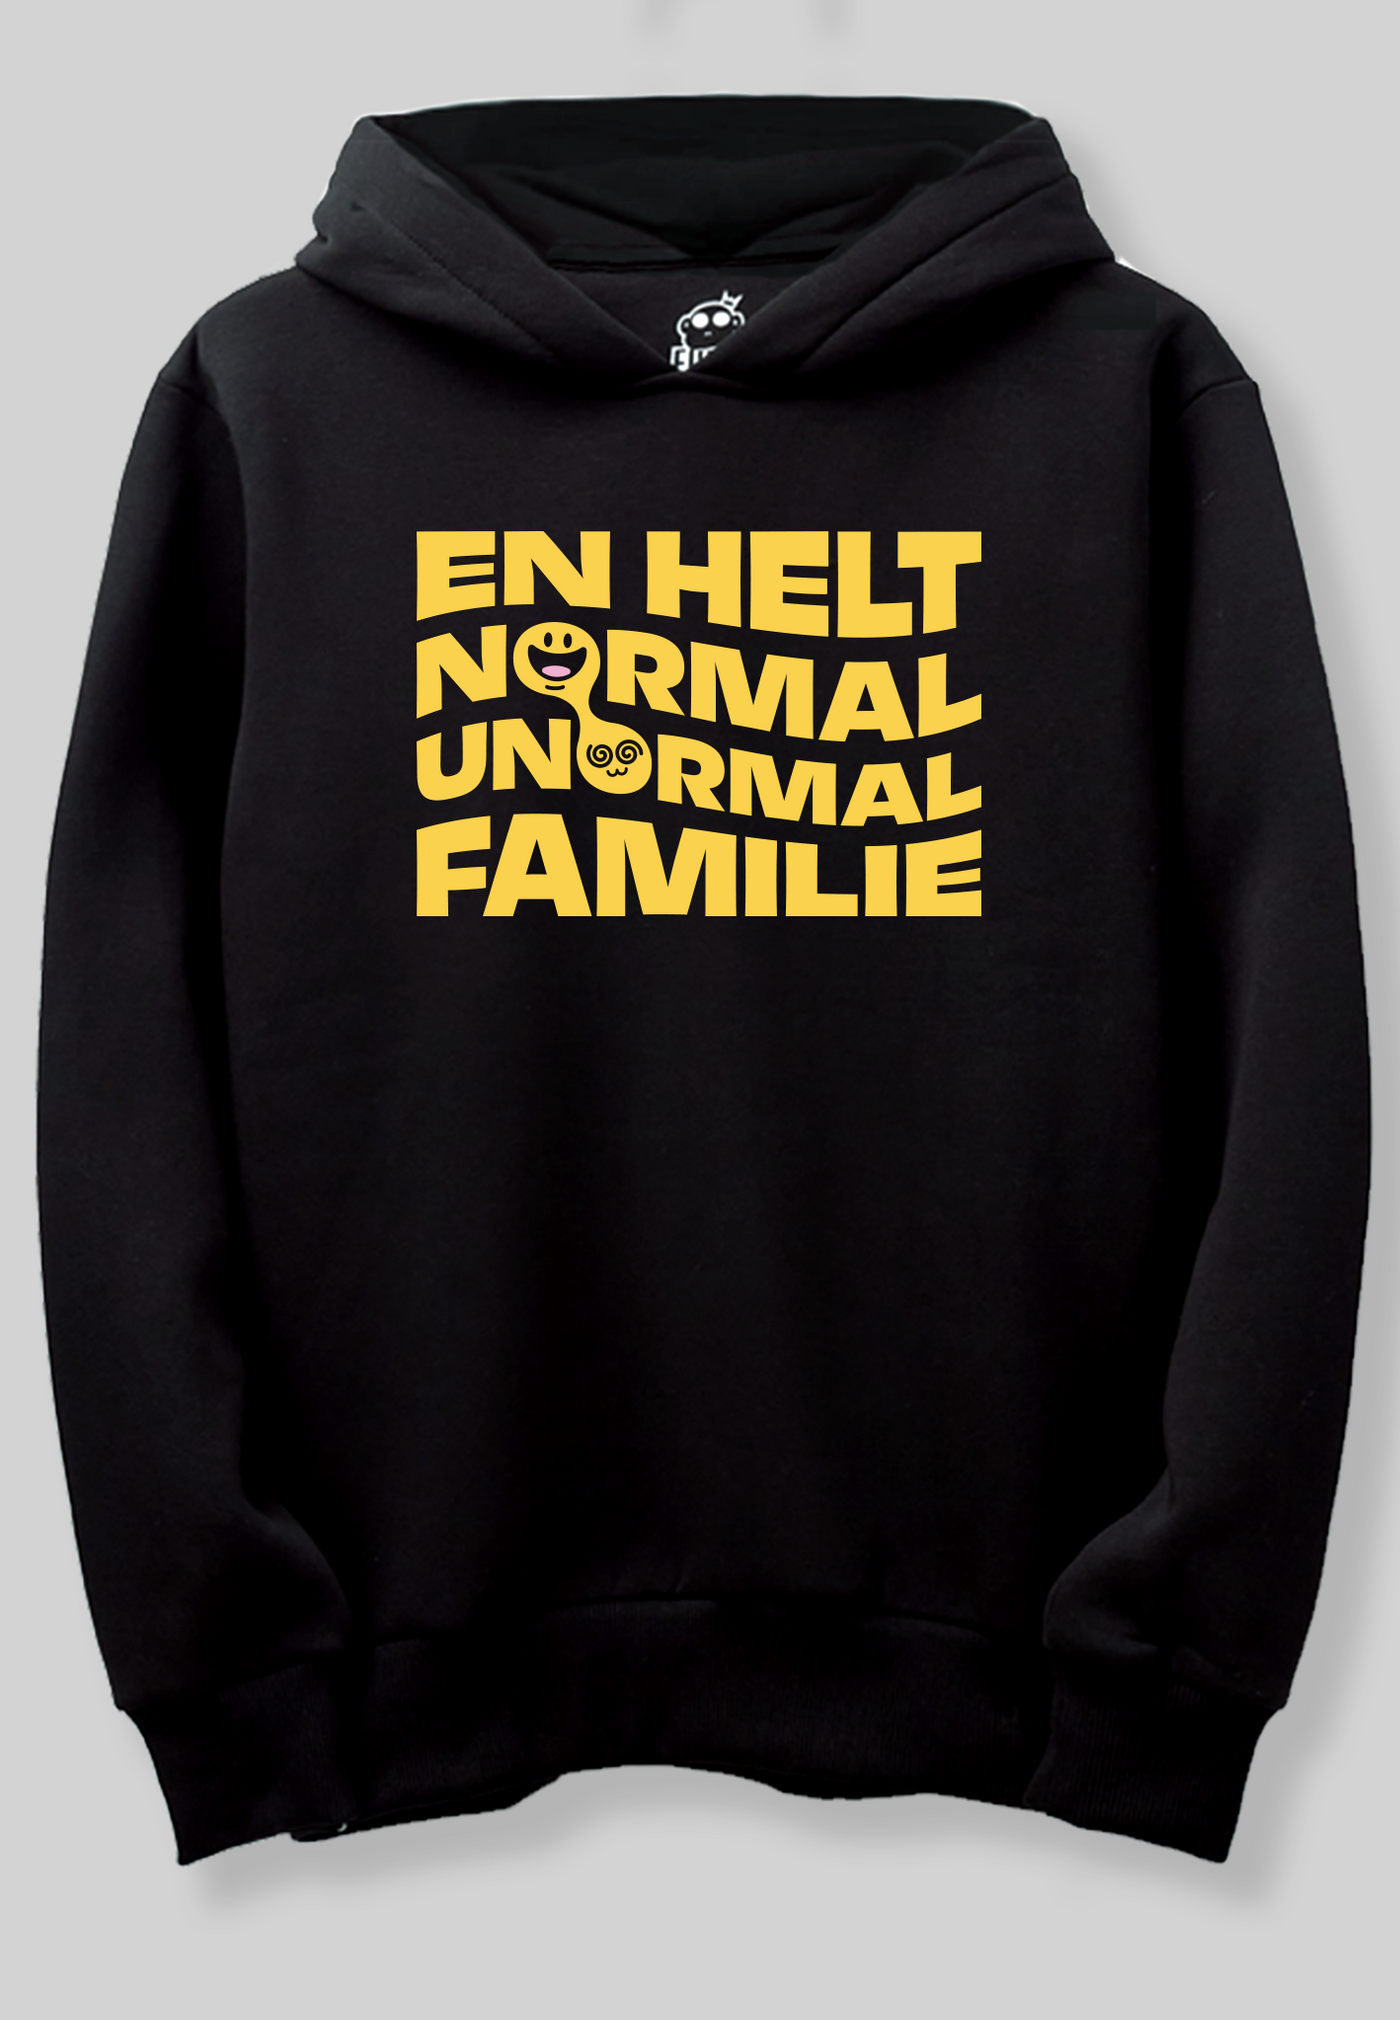 Familien Münster - "NORMAL / UNORMAL FAMILIE" - Sort hoodie